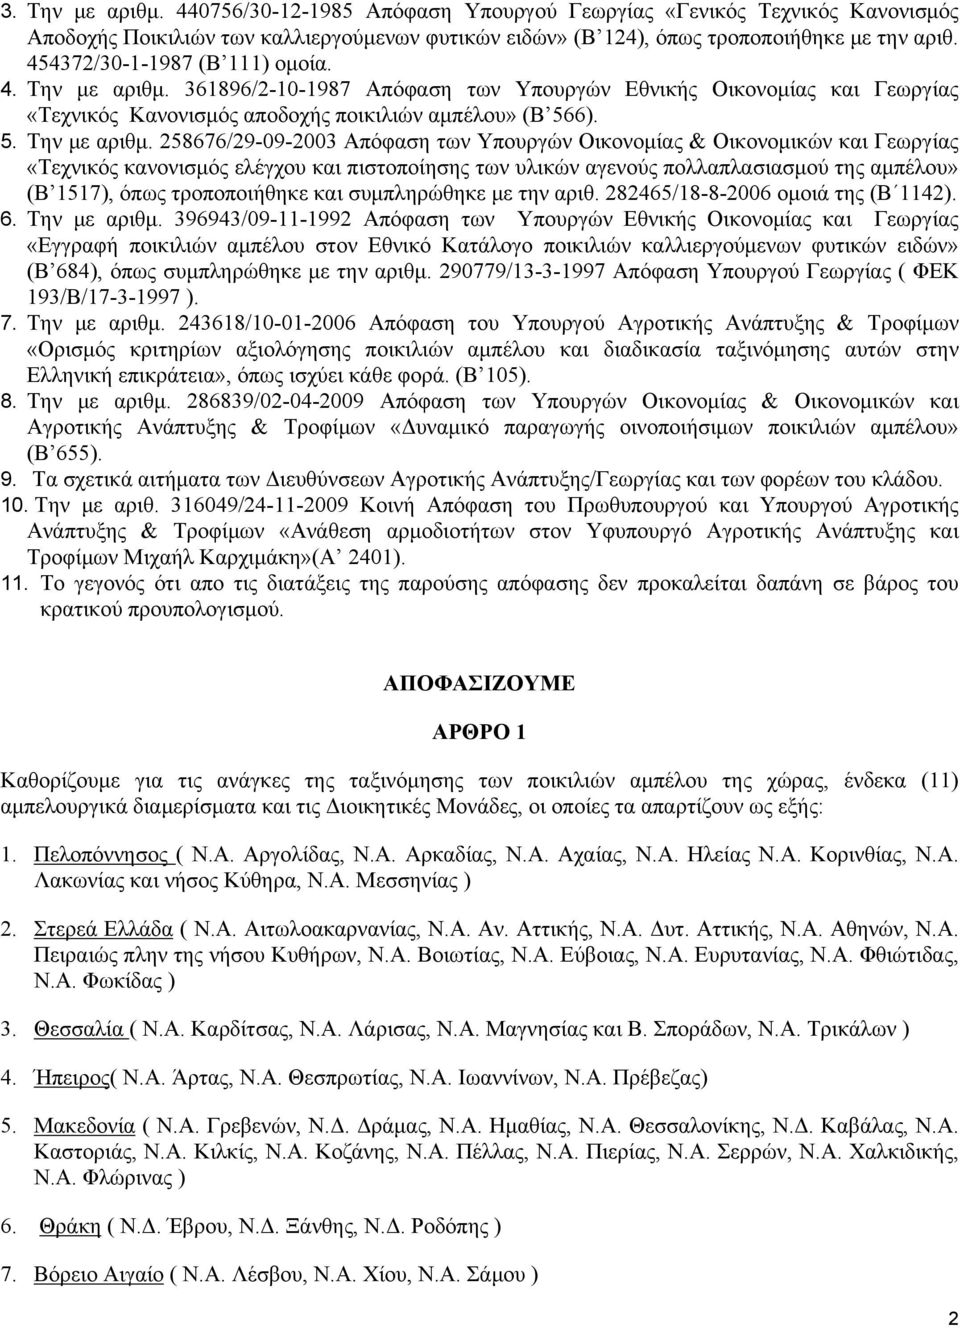 361896/2-10-1987 Απόφαση των Υπουργών Εθνικής Οικονομίας και Γεωργίας «Τεχνικός Κανονισμός αποδοχής ποικιλιών αμπέλου» (Β 566). 5. Την με αριθμ.